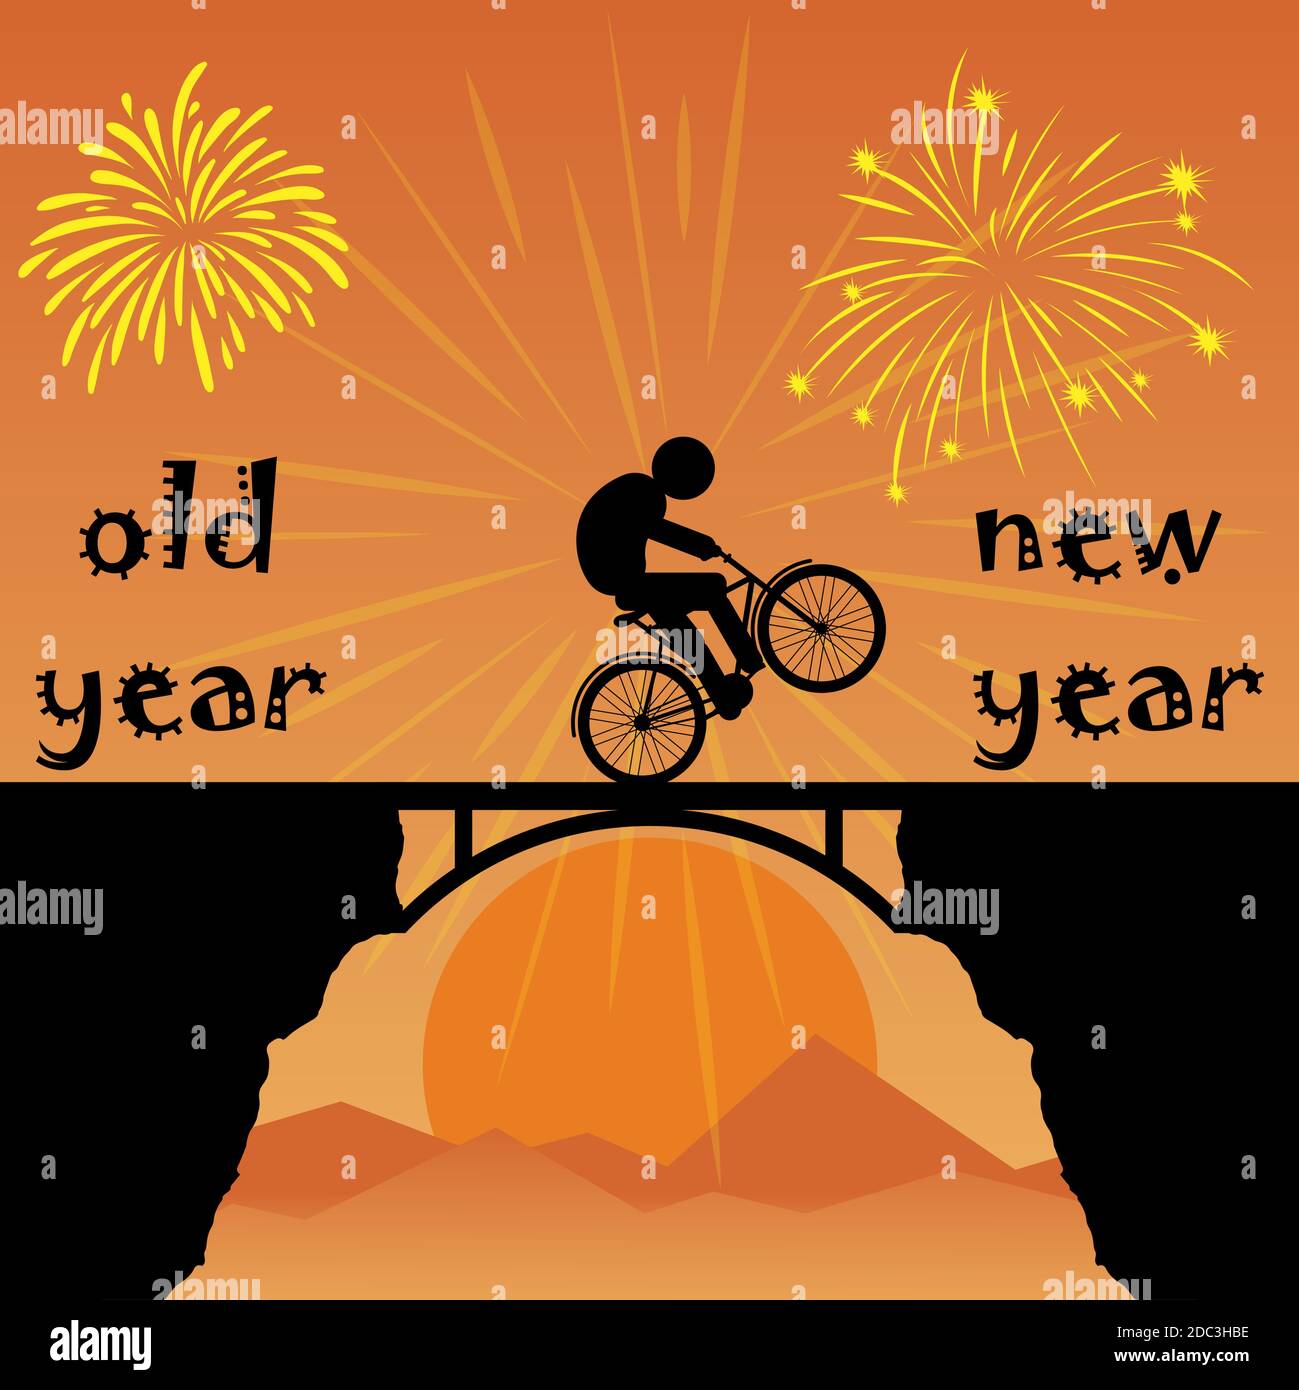 Radfahrer wechselt von altem Jahr zu neuem Jahr Stock Vektor